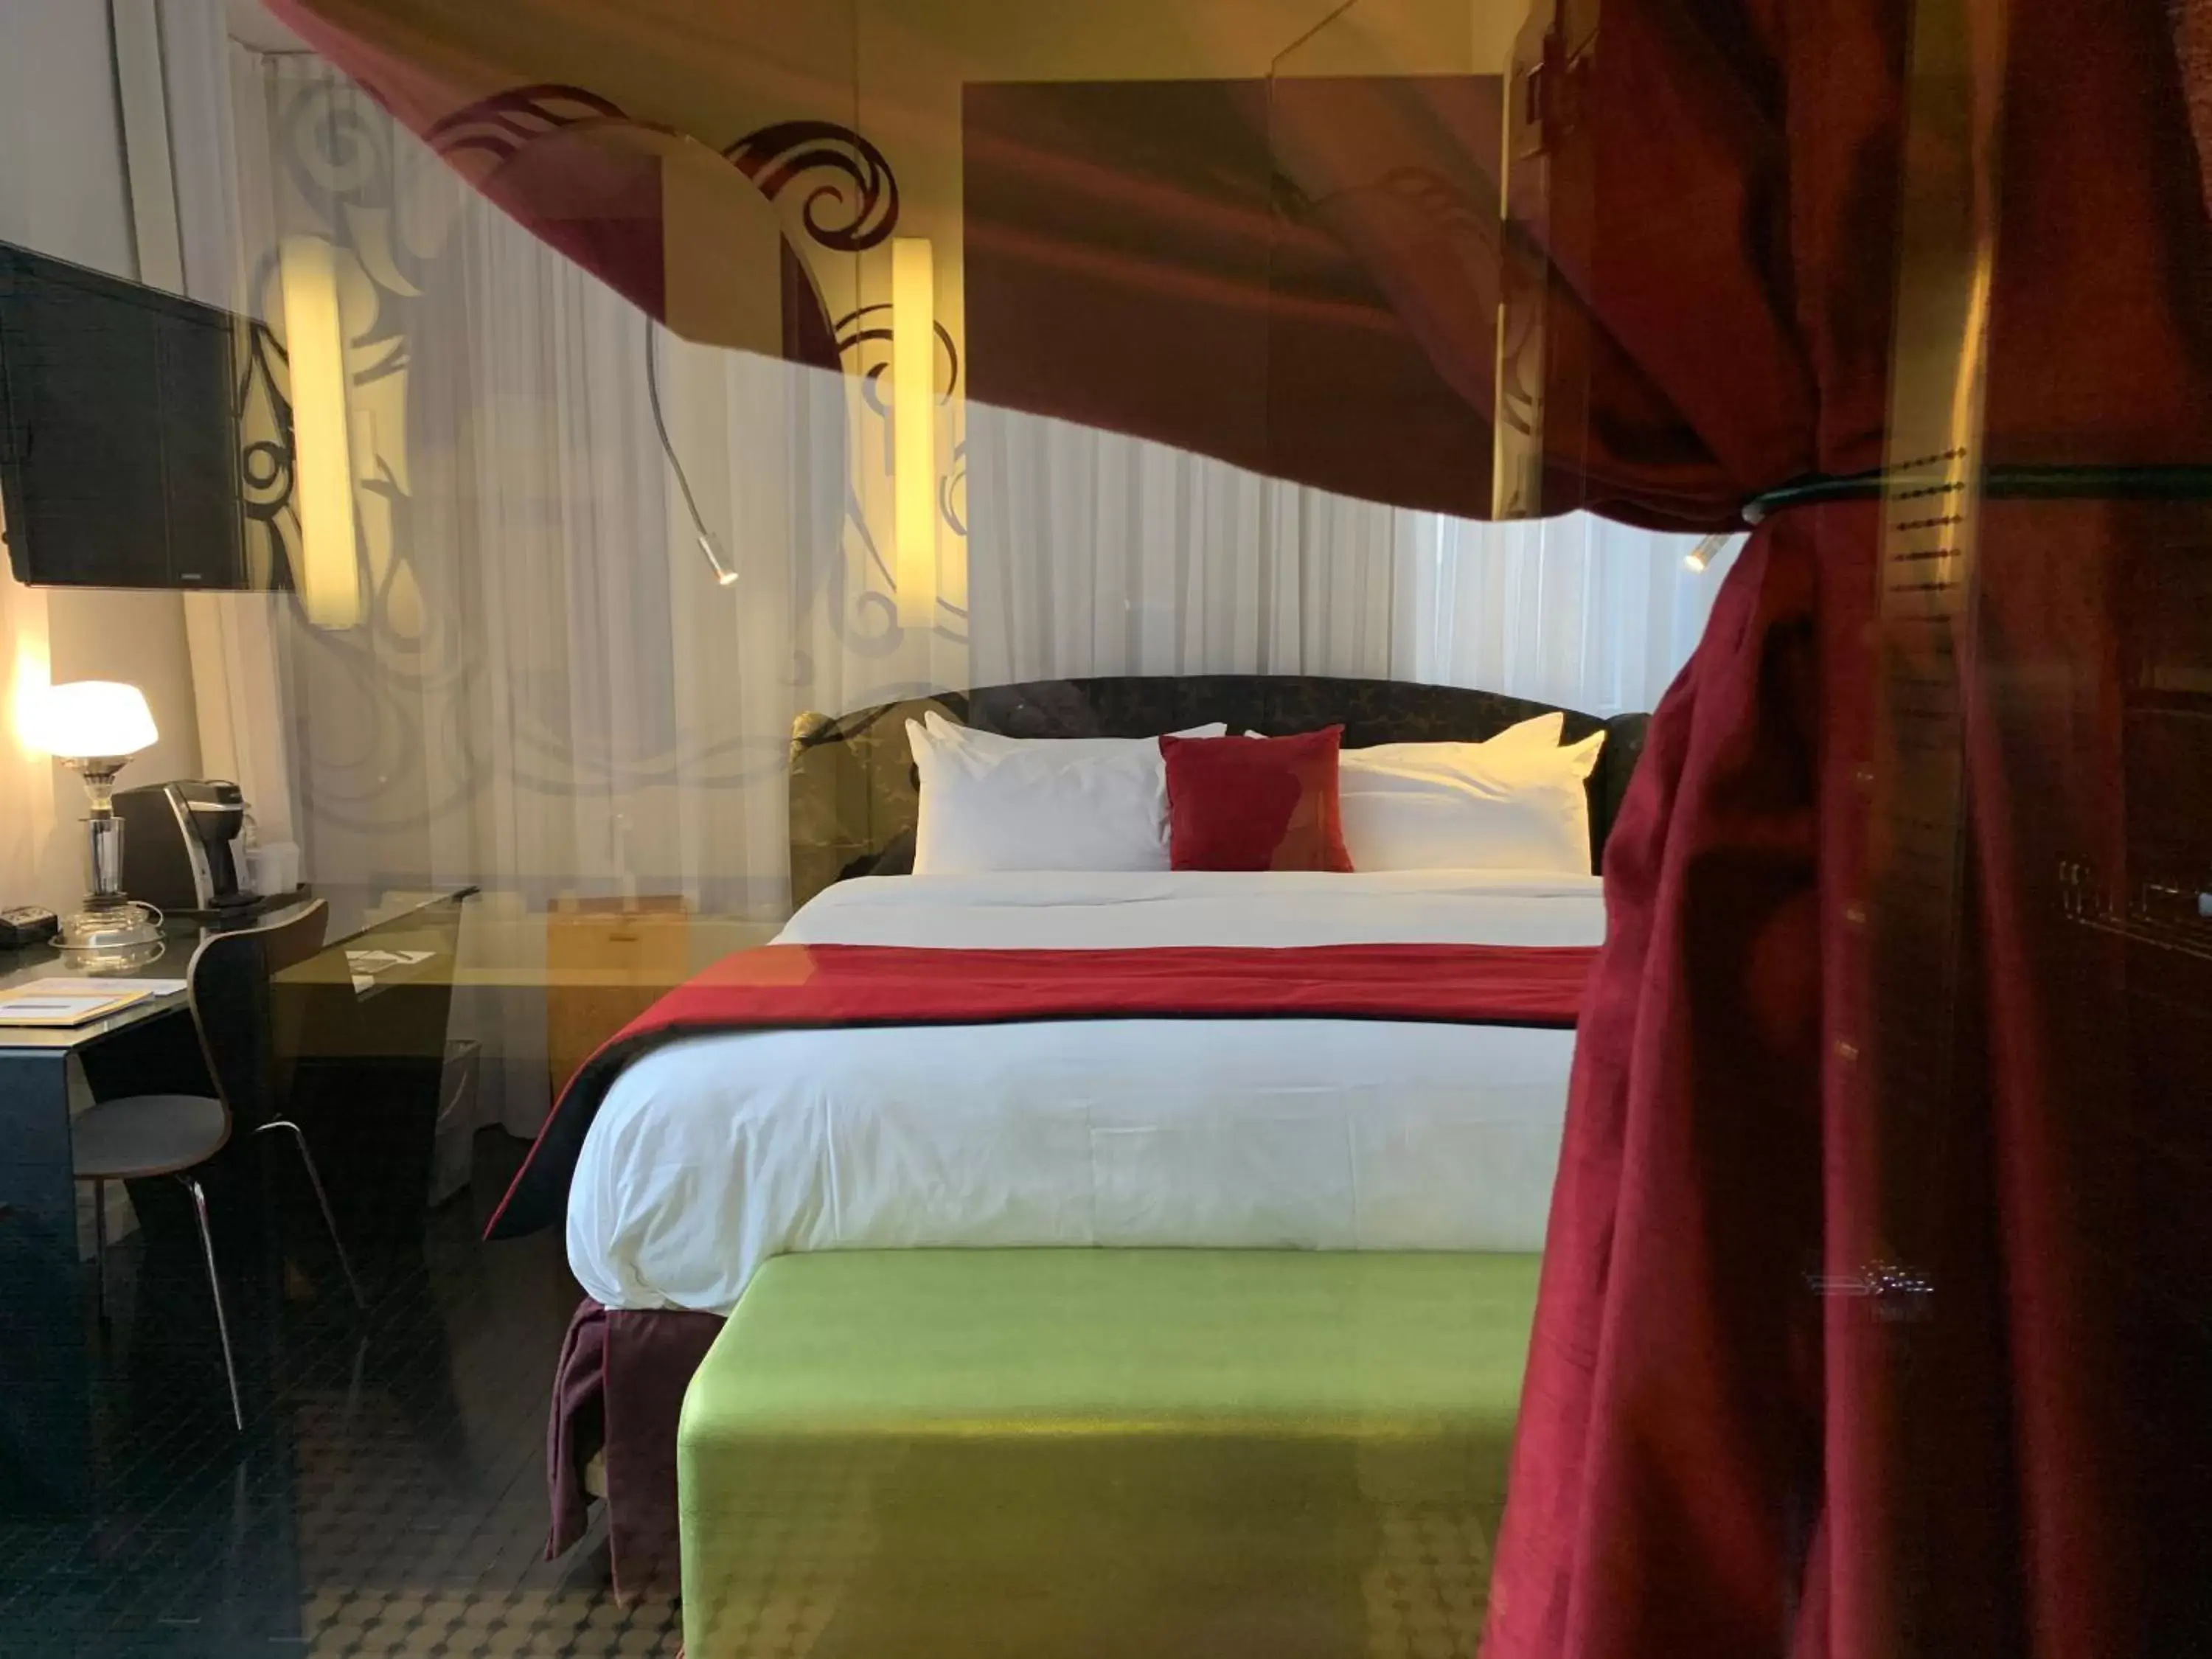 Shower, Bed in Hotel Chez Swann